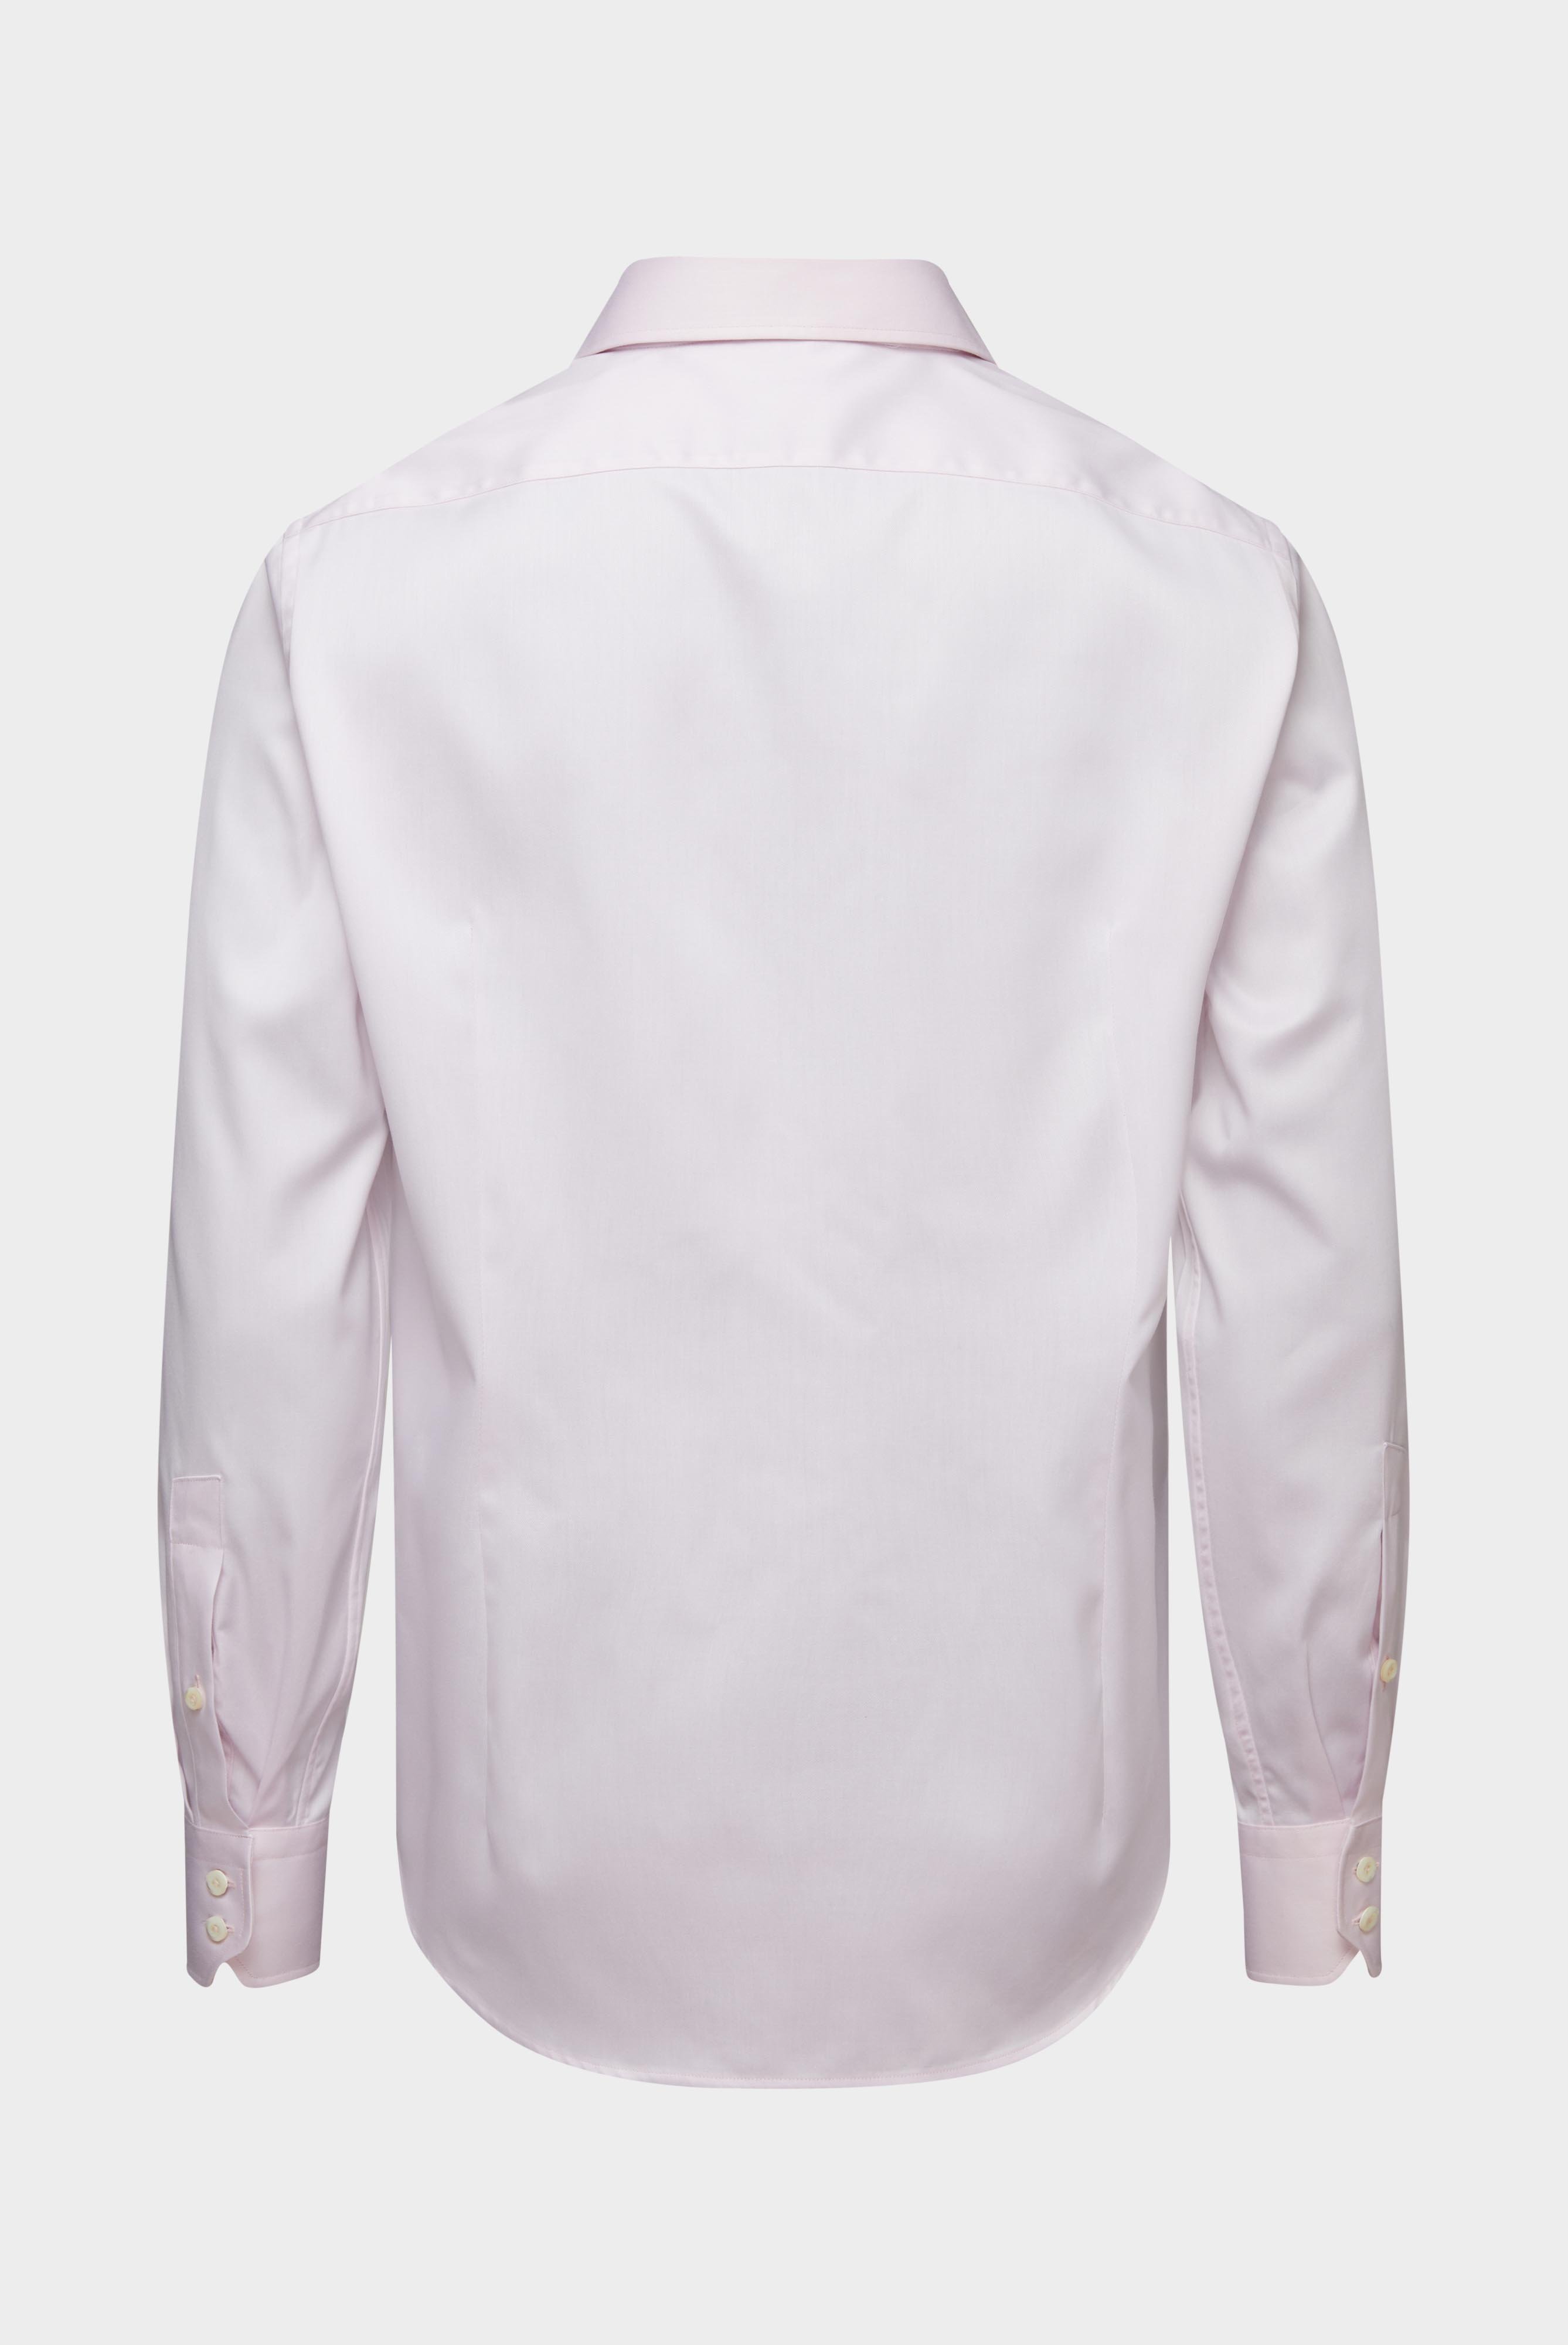 Bügelleichte Hemden+Bügelfreies Twill Hemd Tailor Fit+20.2020.BQ.132241.510.41